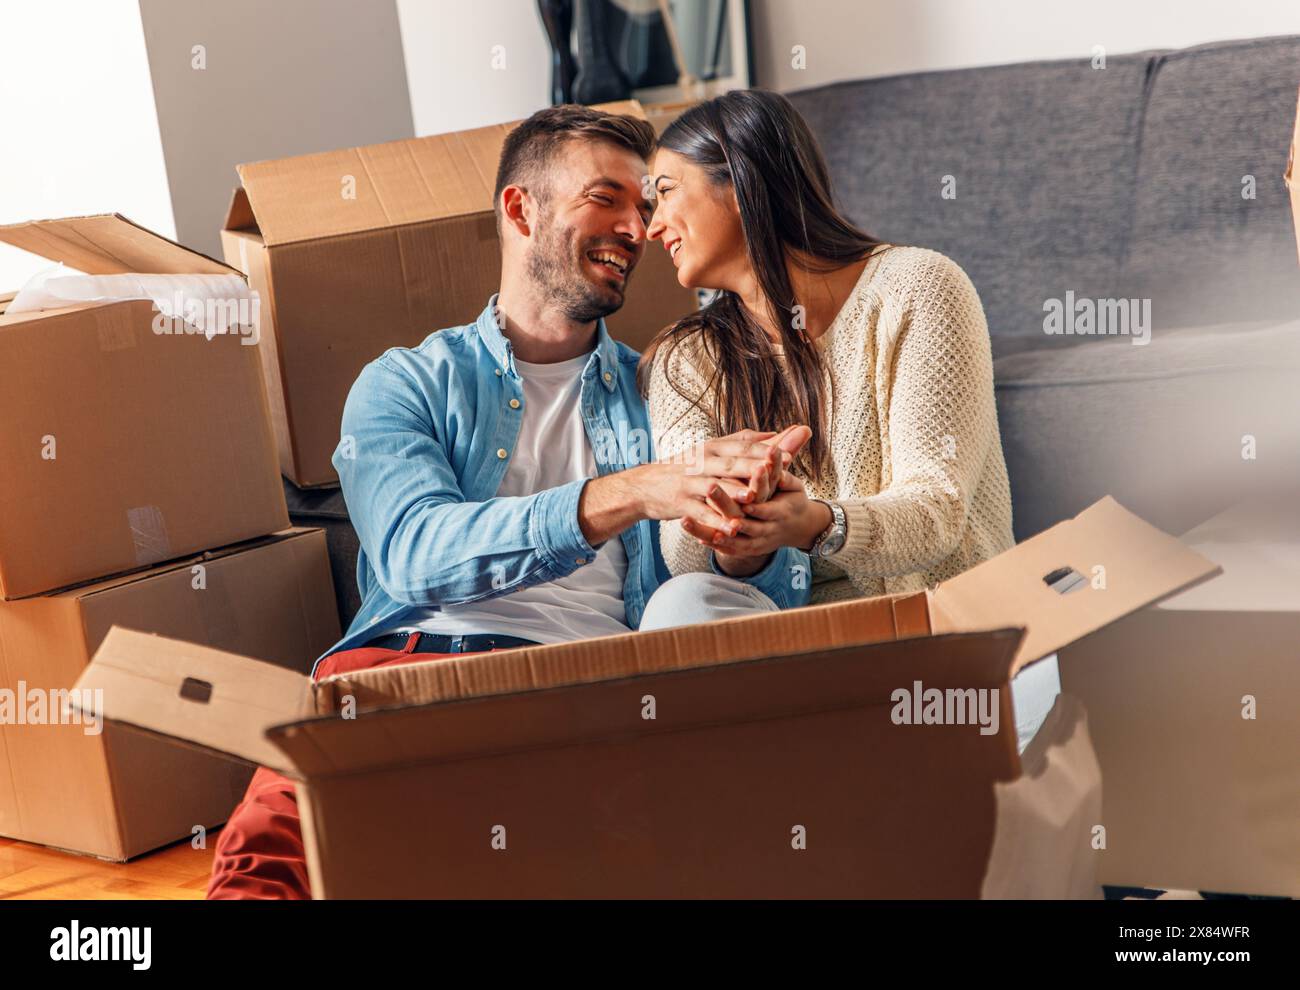 Ein lächelndes junges Paar zieht in ein neues Zuhause, sitzt auf dem Boden und packt aus. Stockfoto